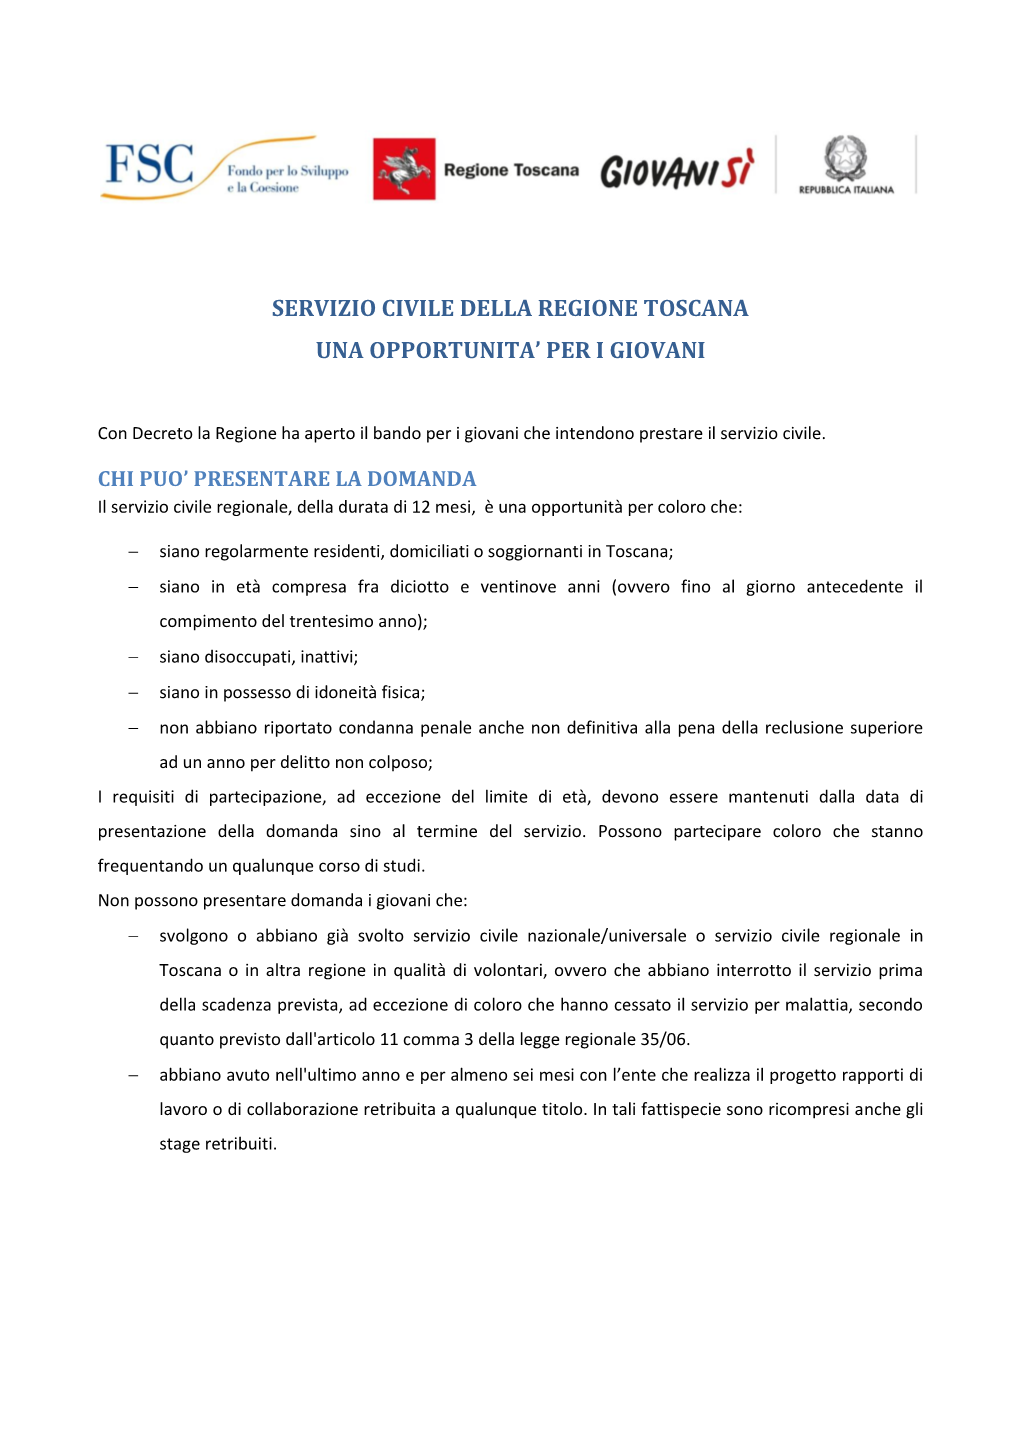 Servizio Civile Della Regione Toscana Una Opportunita’ Per I Giovani